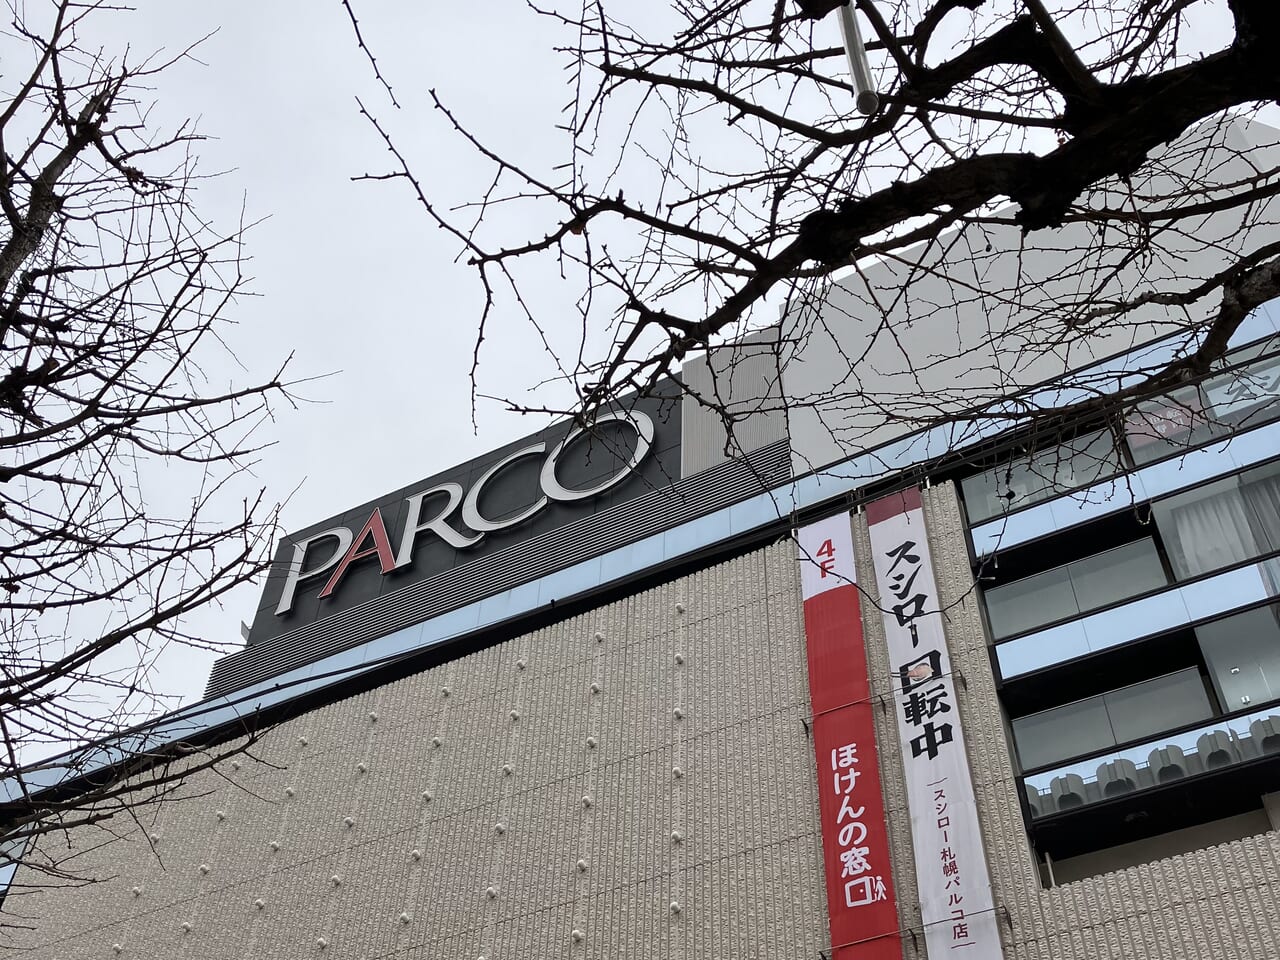 パルコ札幌店